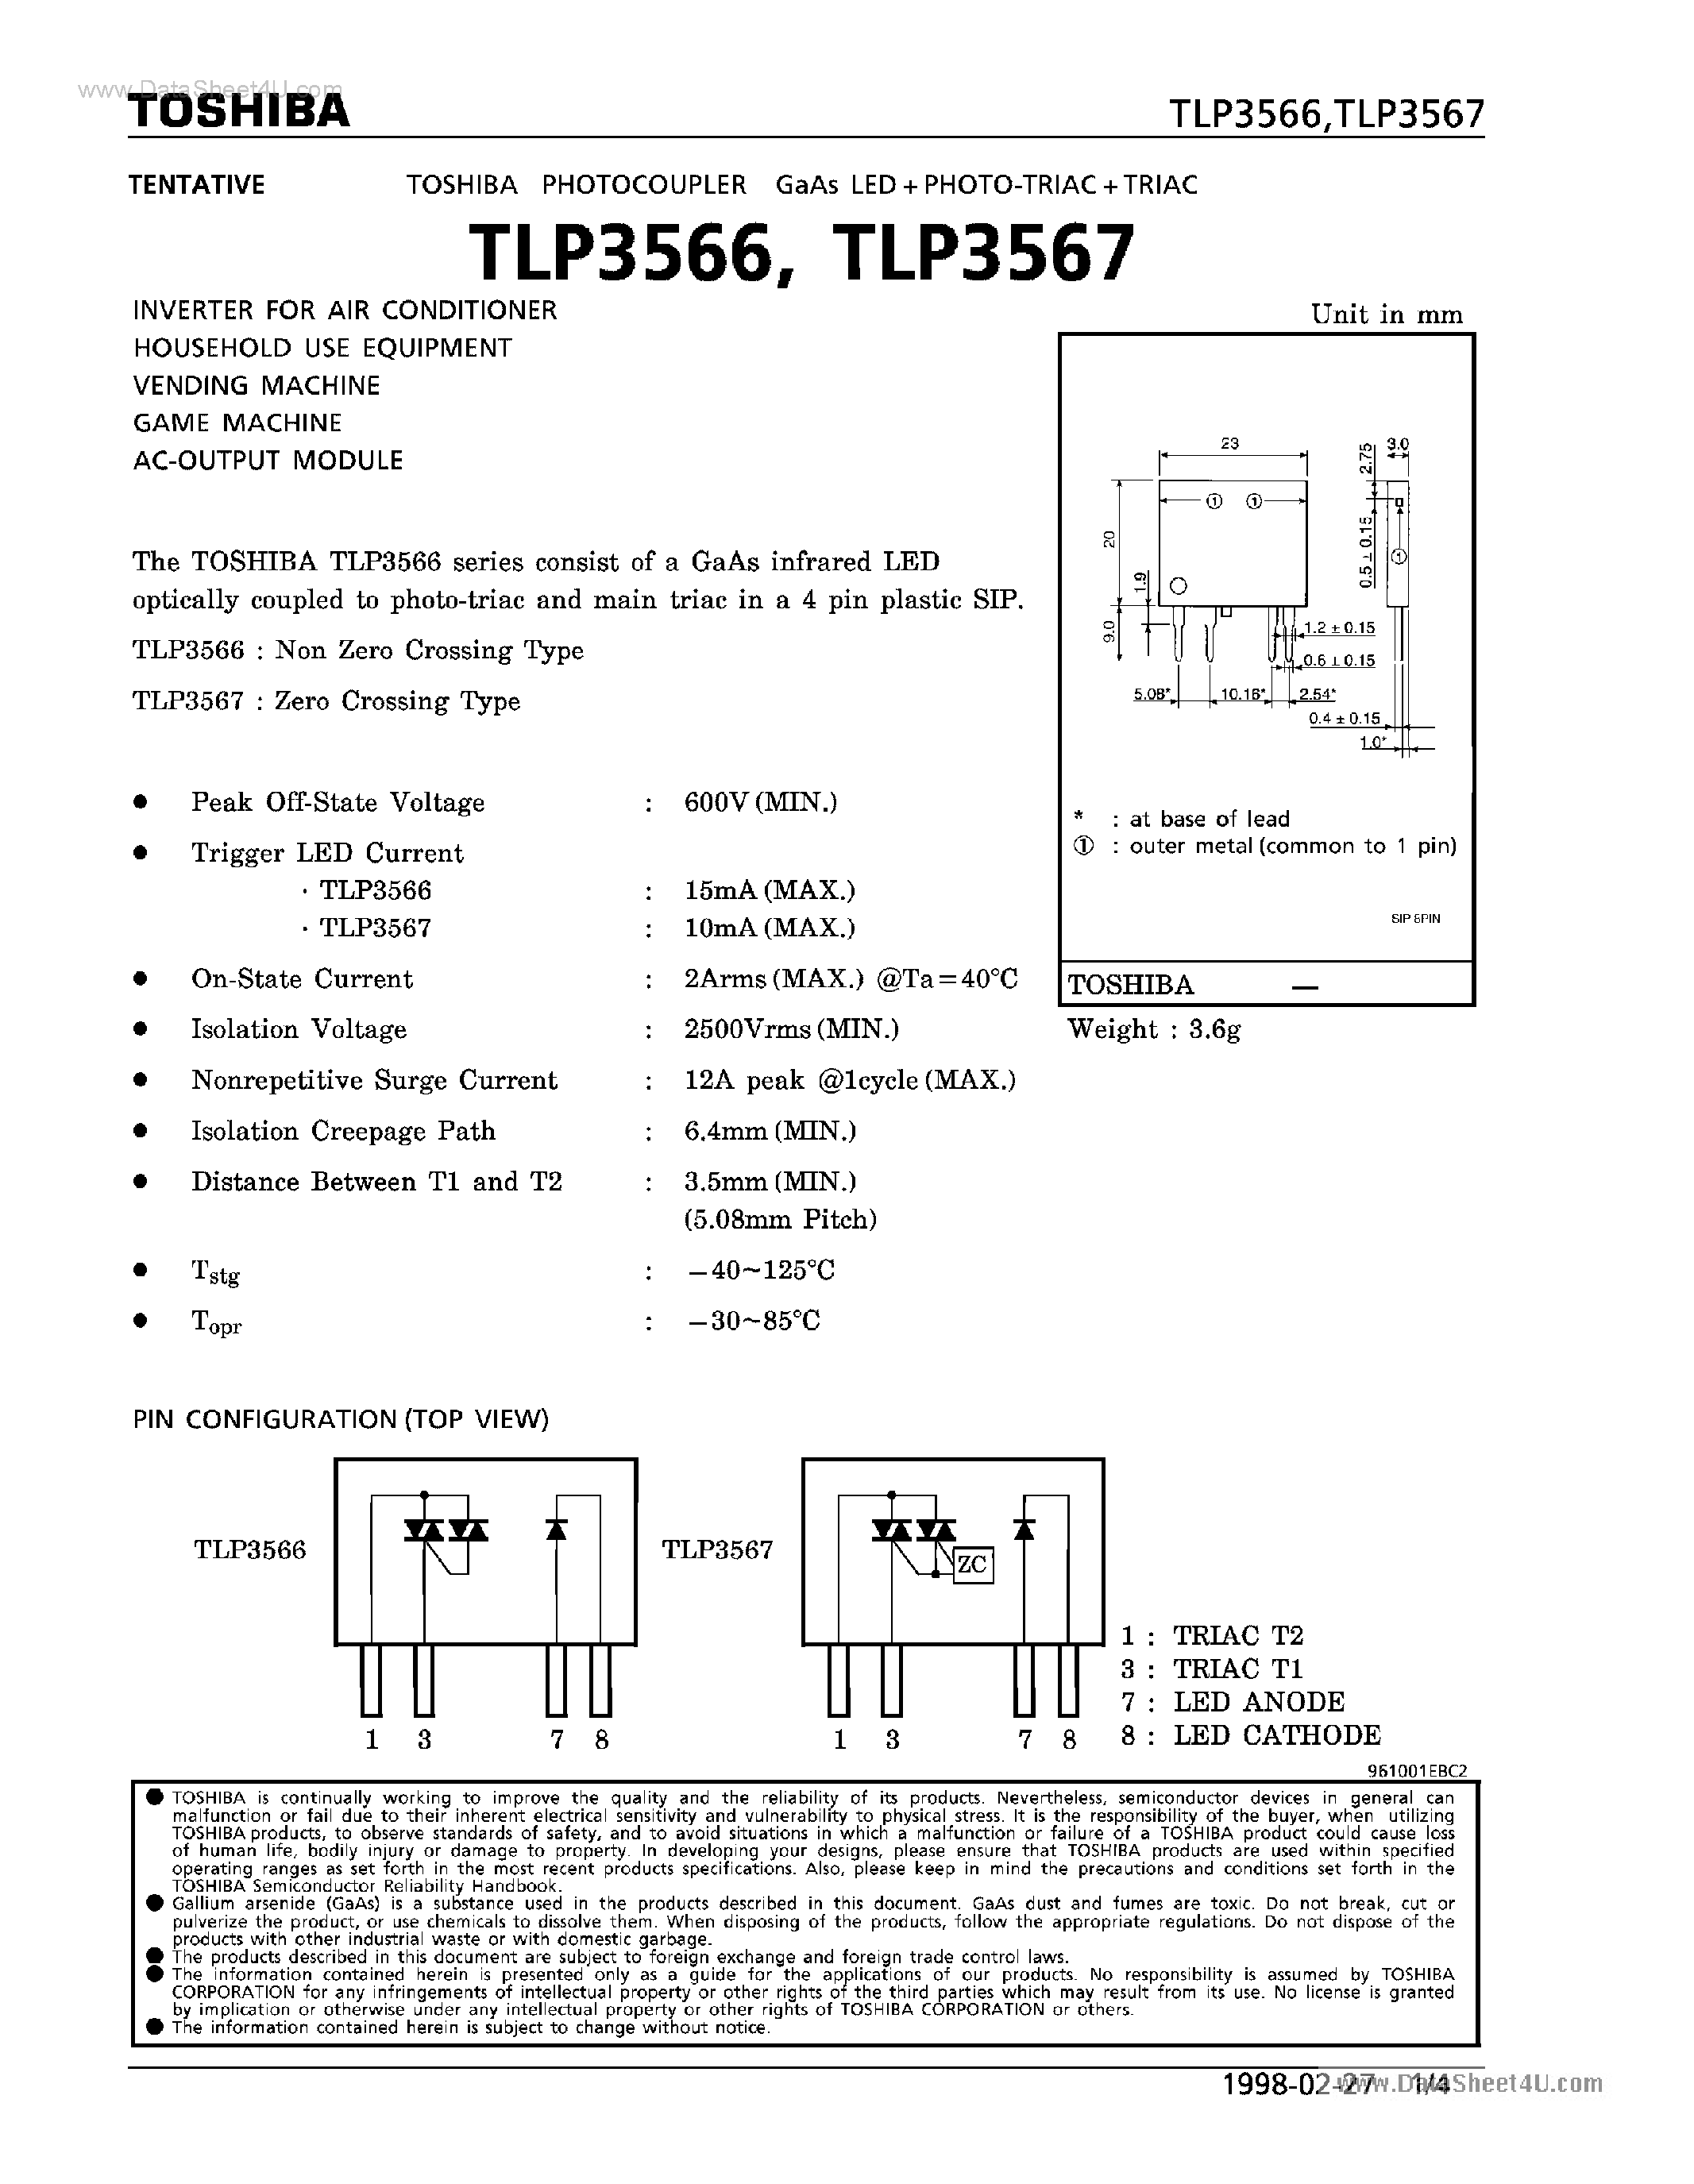 Даташит TLP3566-(TLP3566 / TLP3567) Photocoupler страница 1